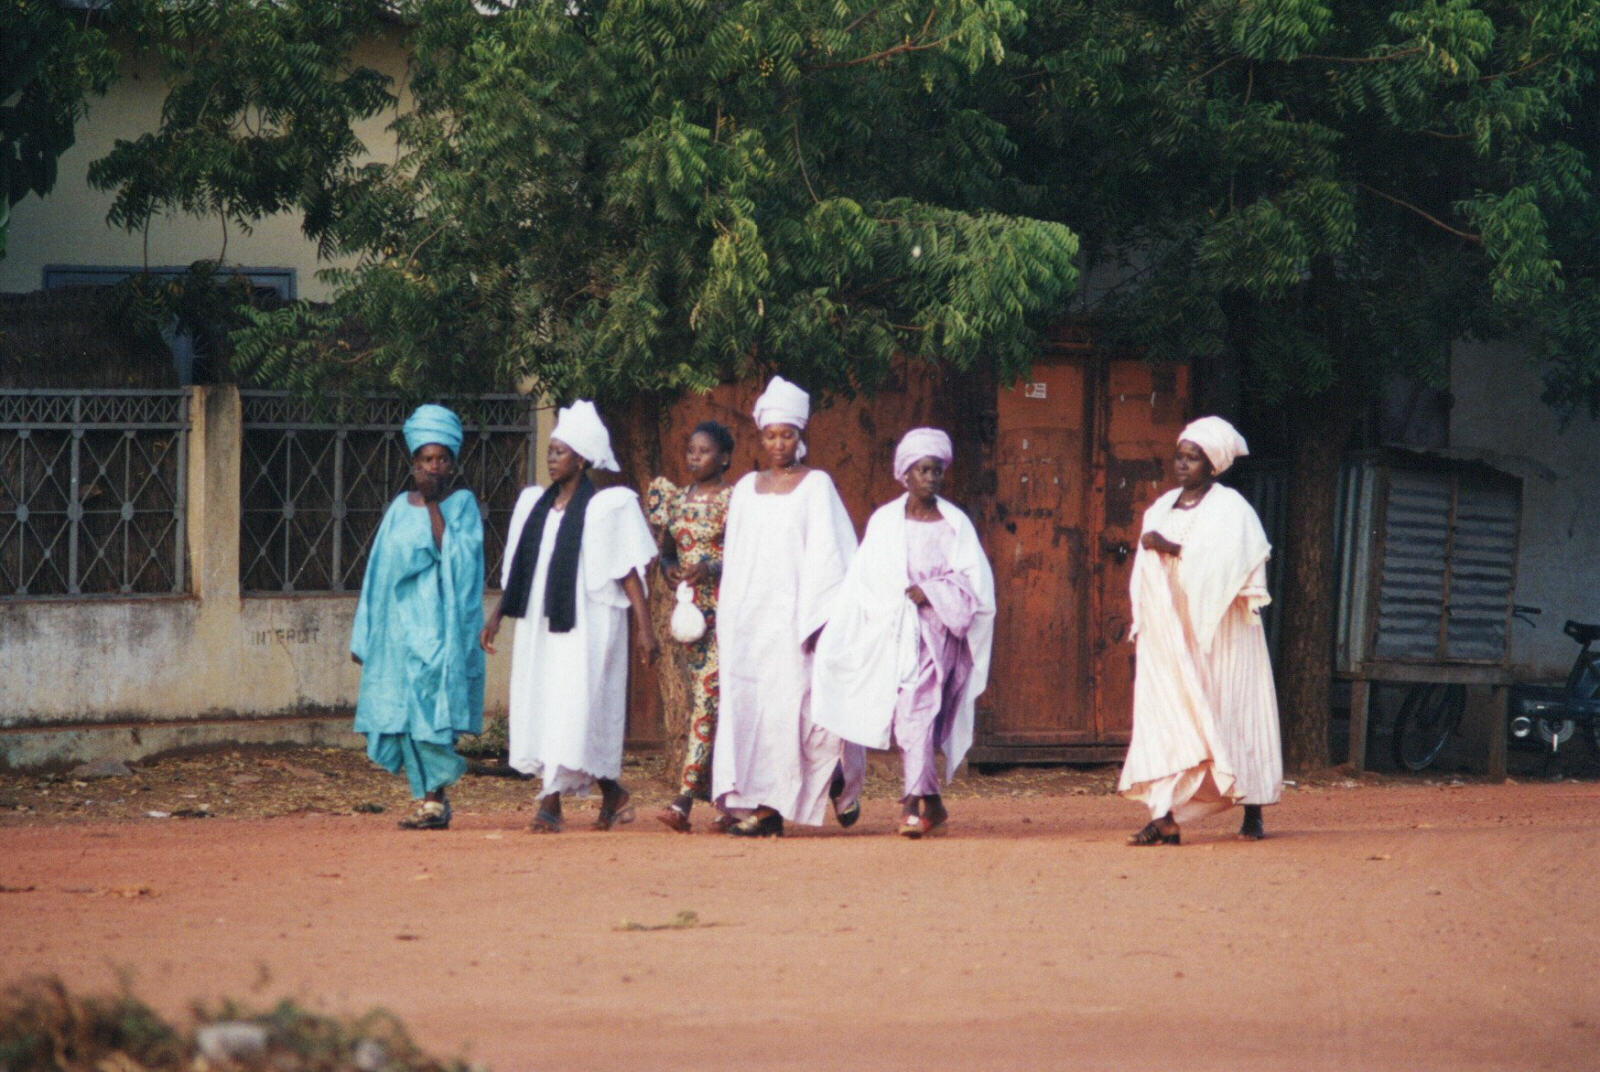 Women in a street in Segou, Mali